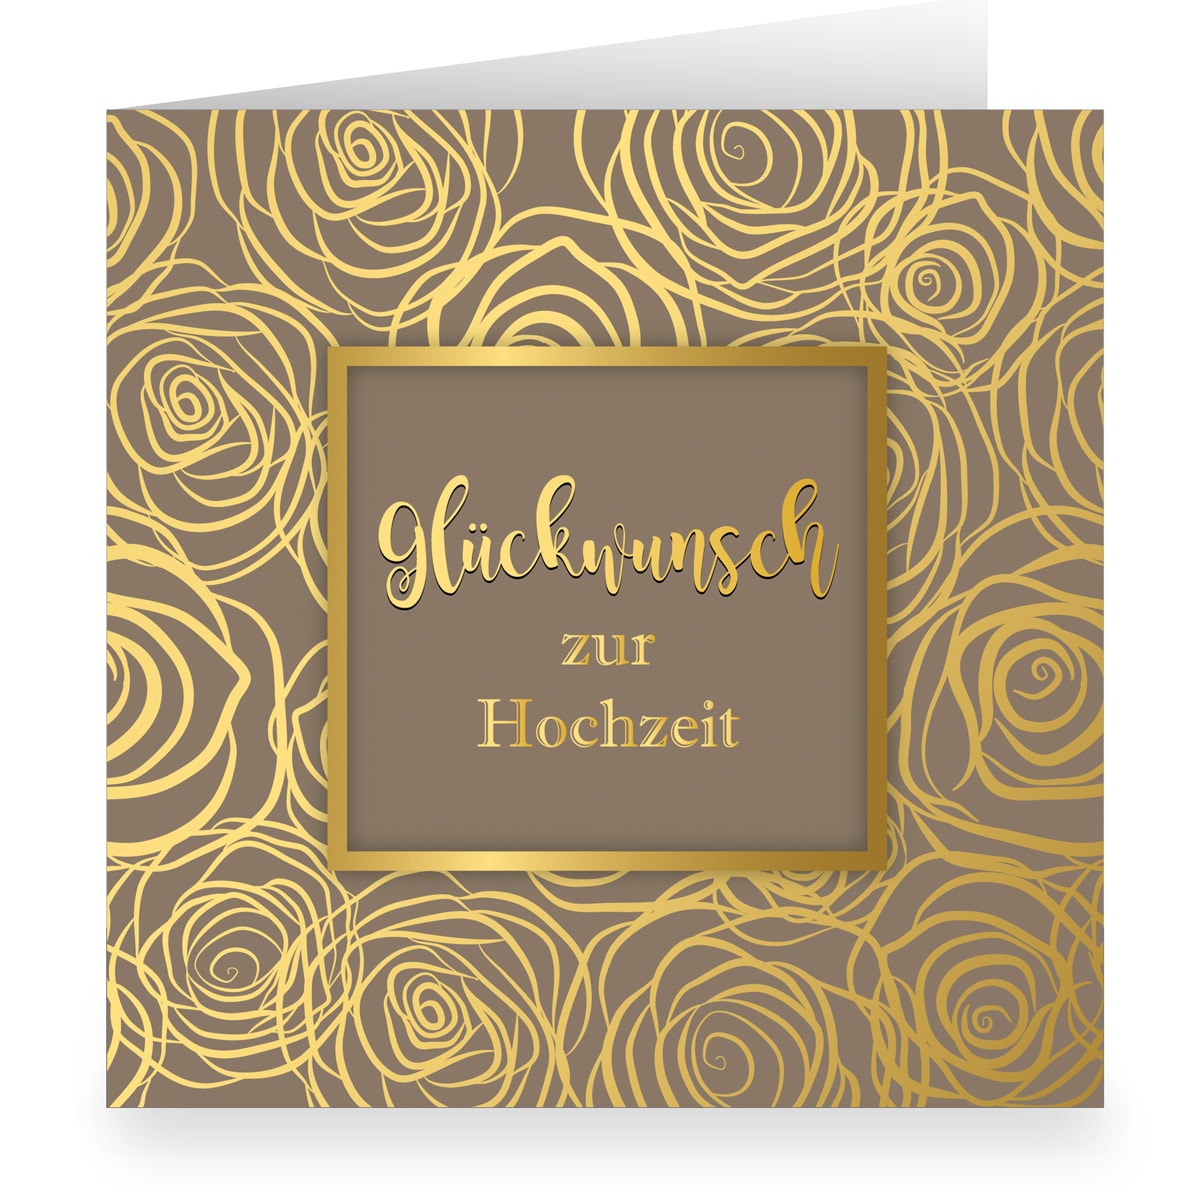 Kartenkaufrausch: Hochzeitskarte mit Rosen Blüten aus unserer Hochzeits Papeterie in beige